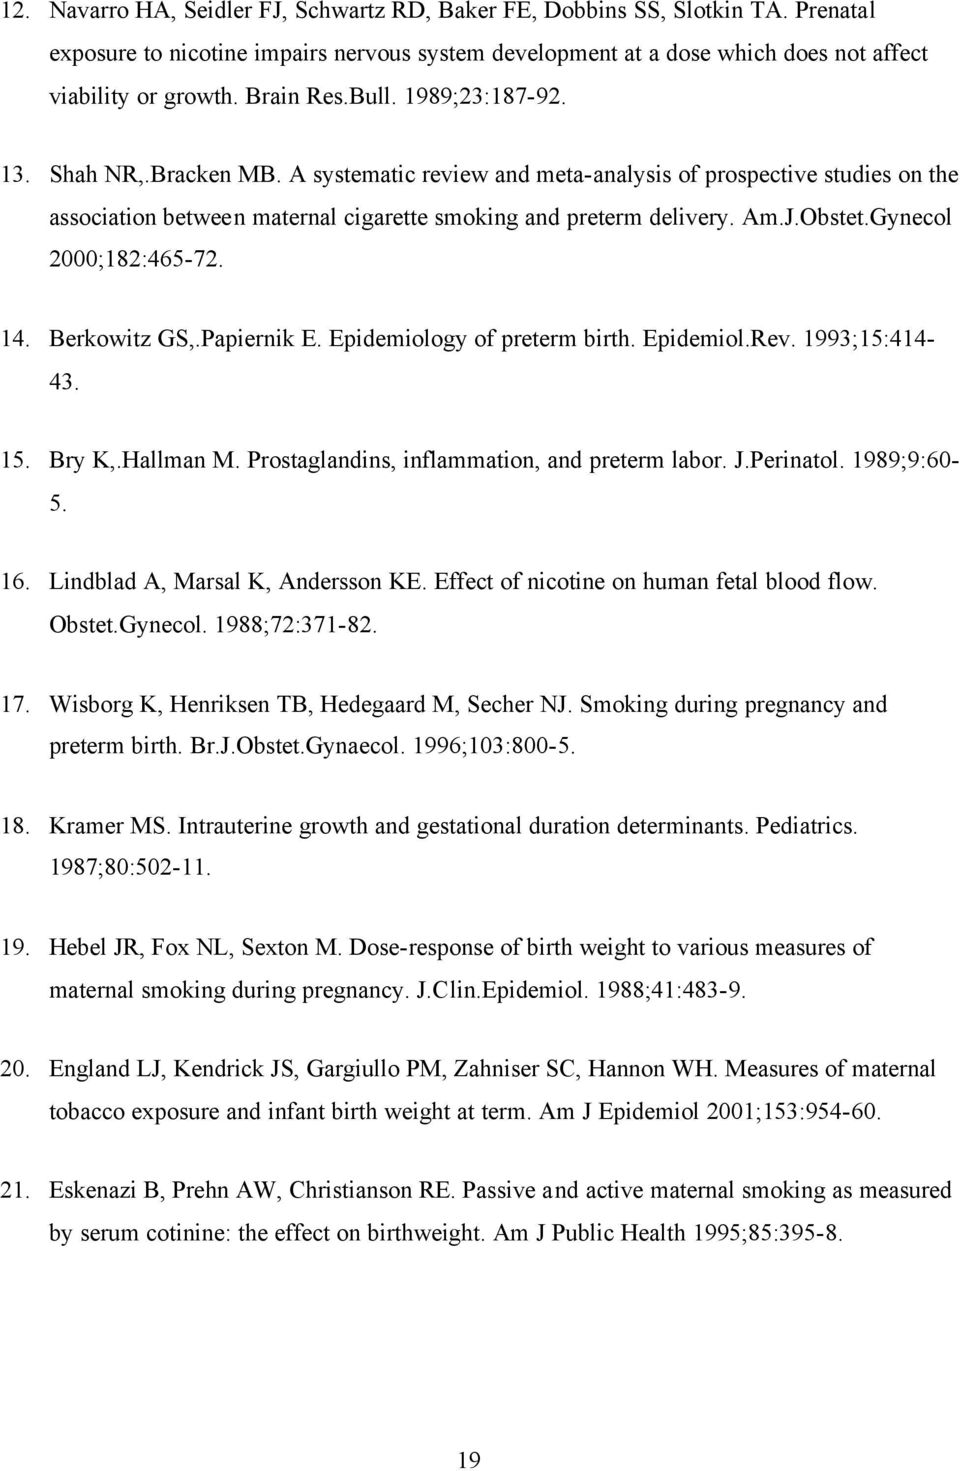 Obstet.Gynecol 2000;182:465-72. 14. Berkowitz GS,.Papiernik E. Epidemiology of preterm birth. Epidemiol.Rev. 1993;15:414-43. 15. Bry K,.Hallman M. Prostaglandins, inflammation, and preterm labor. J.